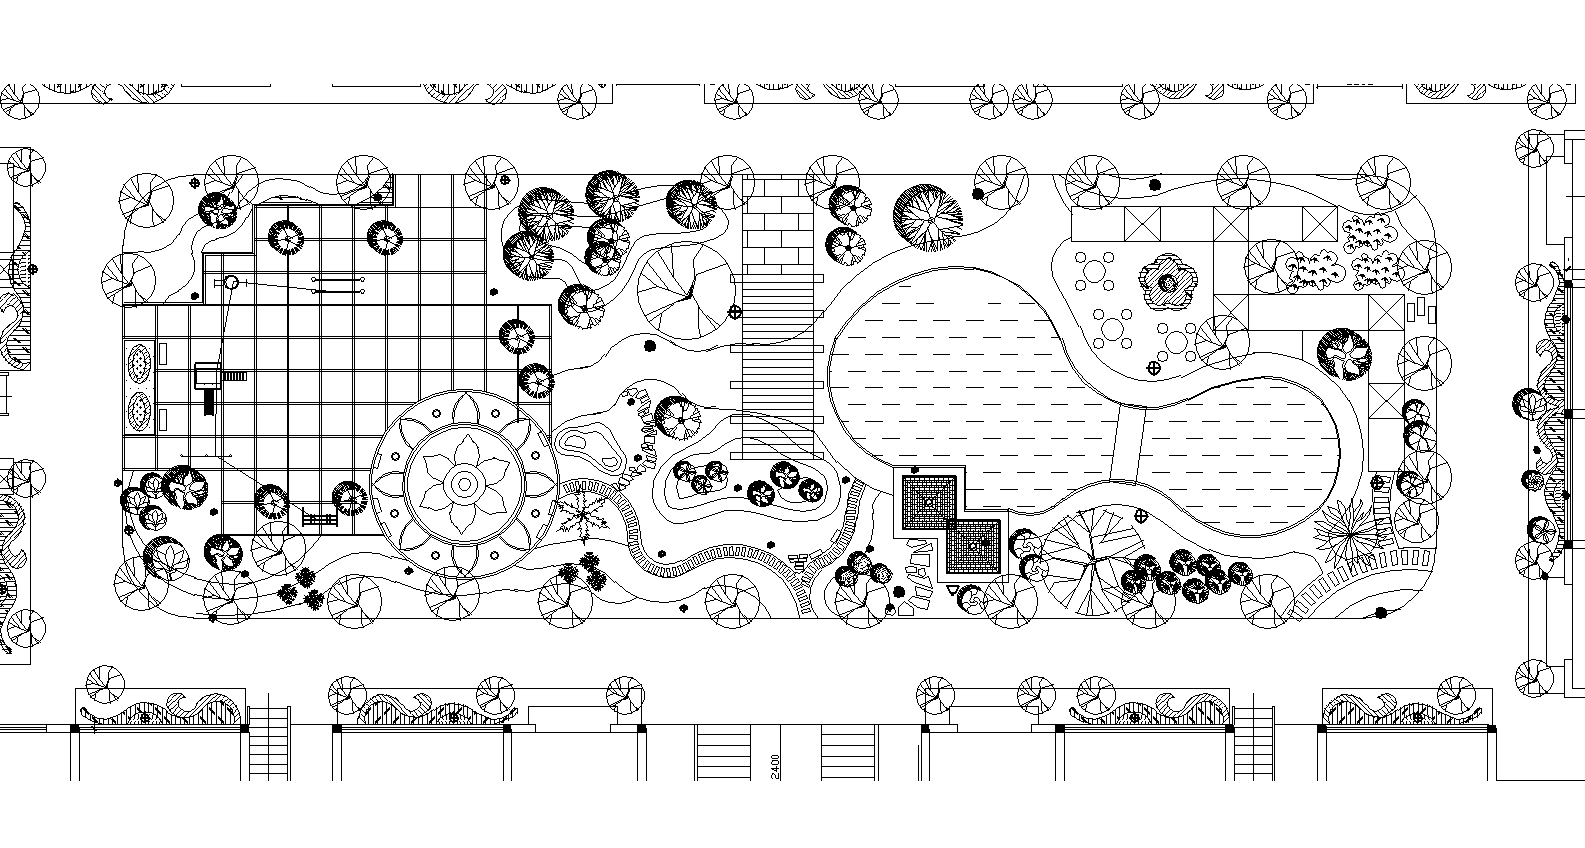 36套屋顶花园景观cad平面图(各类型的屋顶花园)11-20